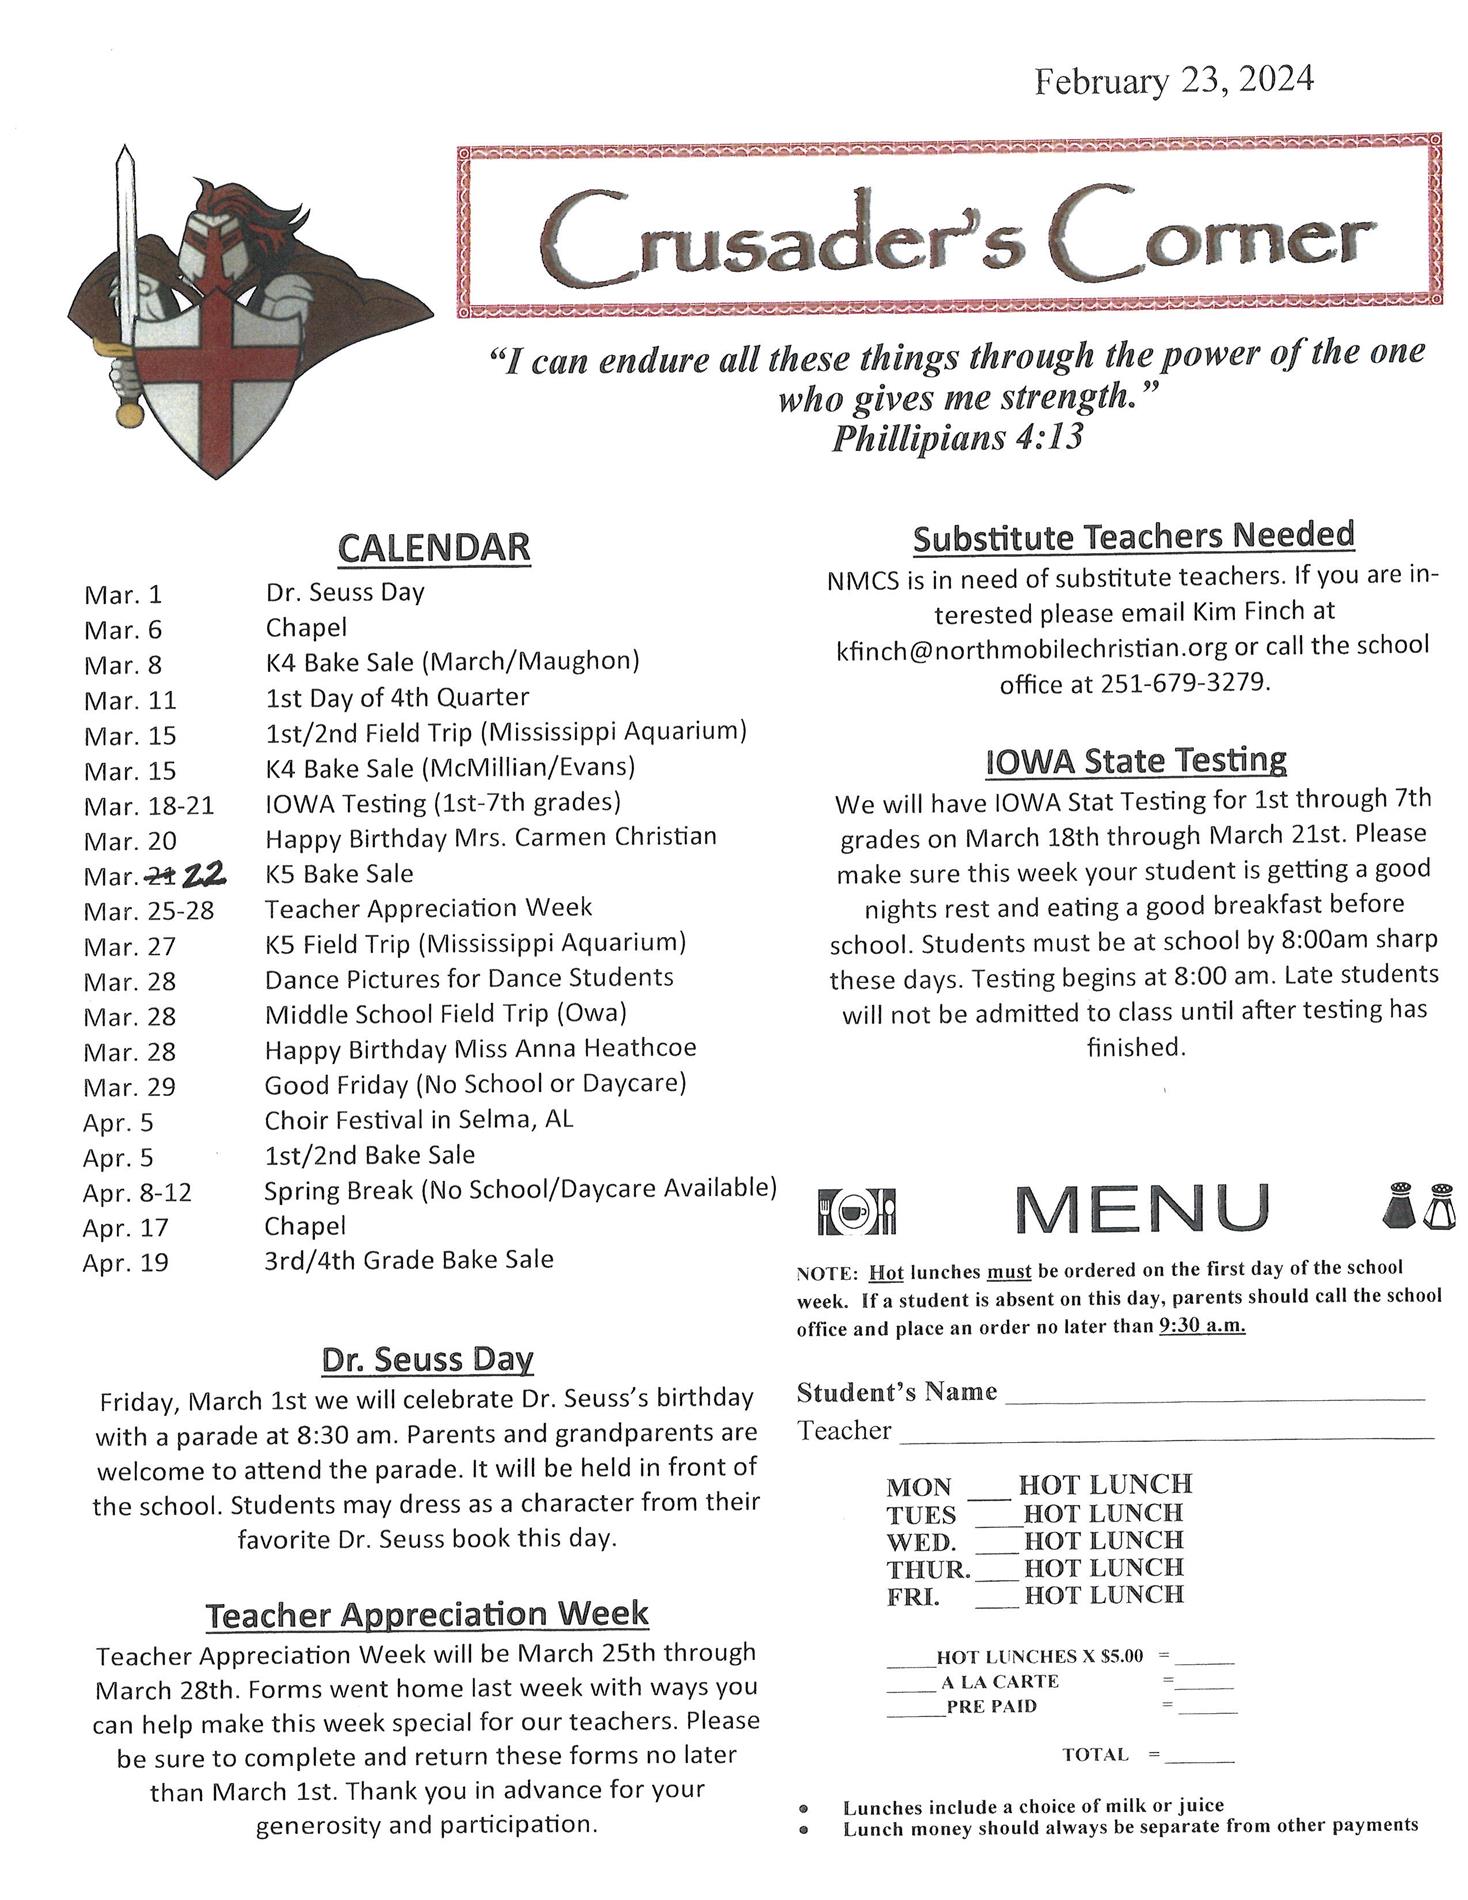 Crusader Corner